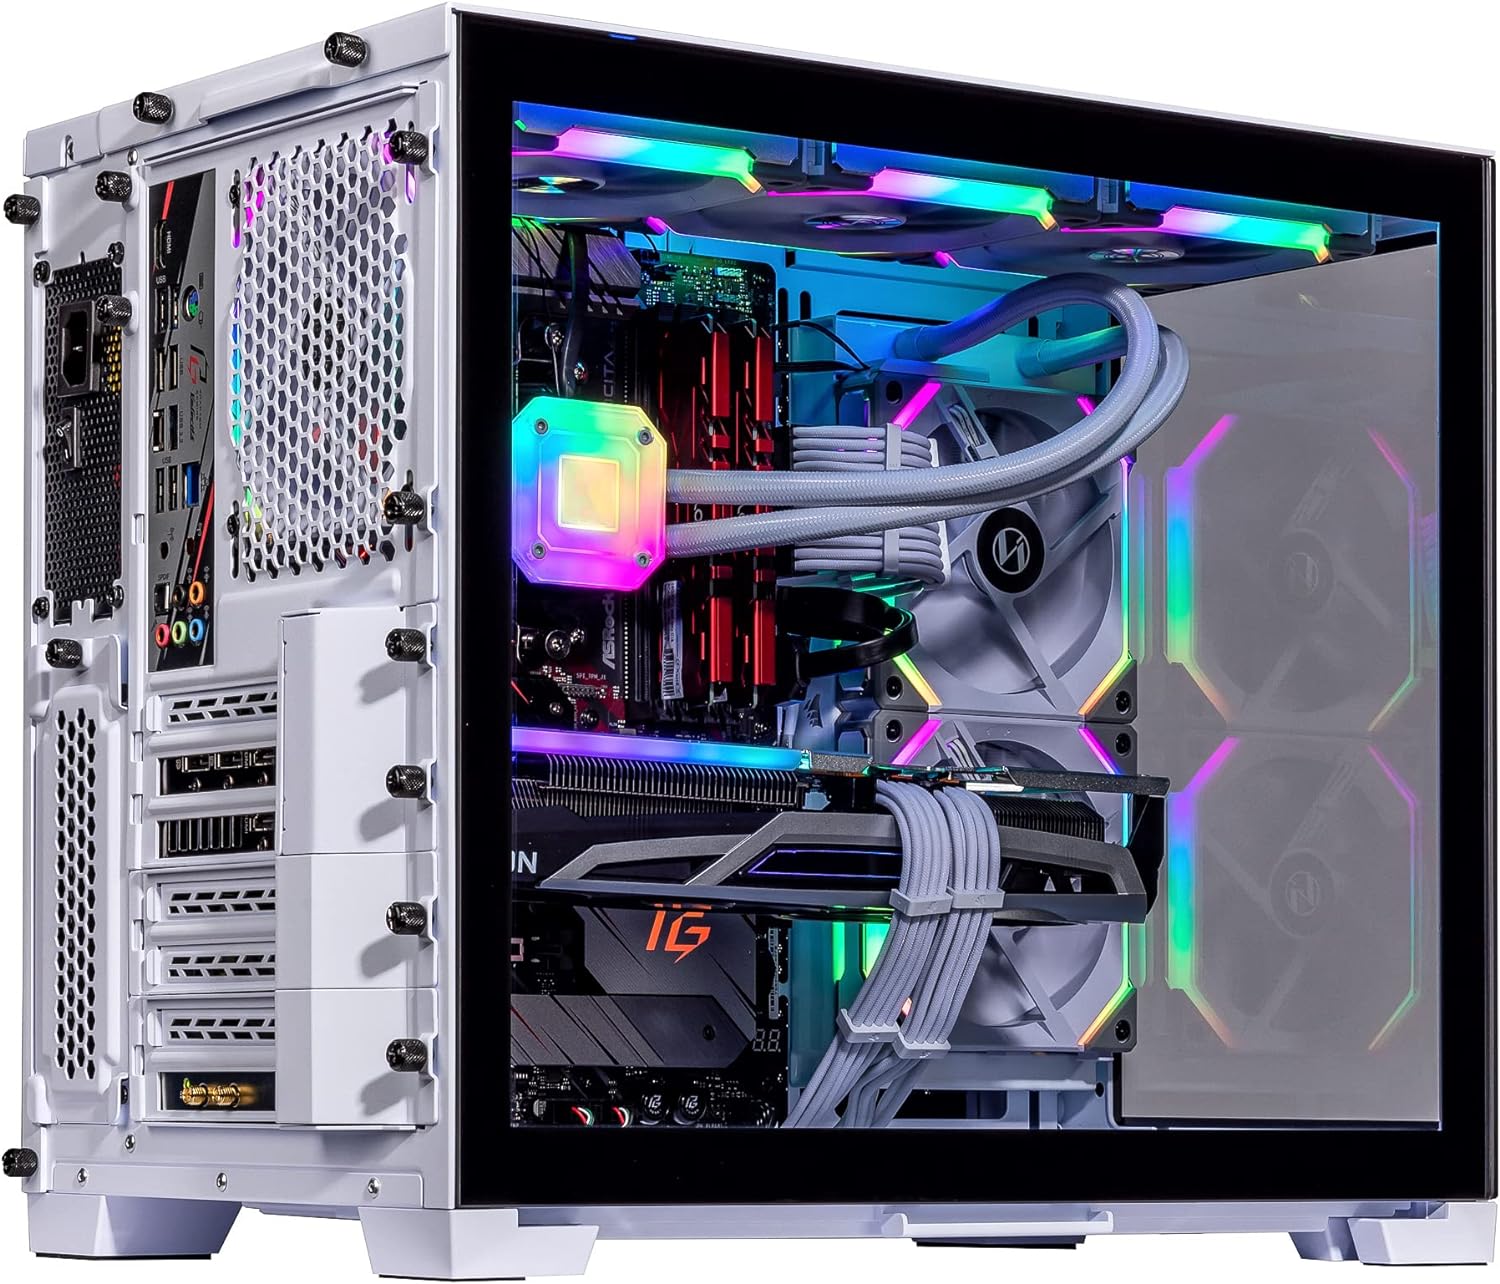 Velztorm Mini Lux Gaming Desktop PC (AMD Ryzen 9 5950X 16-Core, Radeon RX 7900 XT, 32GB RAM, 512GB PCIe SSD + 2TB HDD (3.5), WiFi, USB 3.2, HDMI, Display Port, Win 10 Pro)